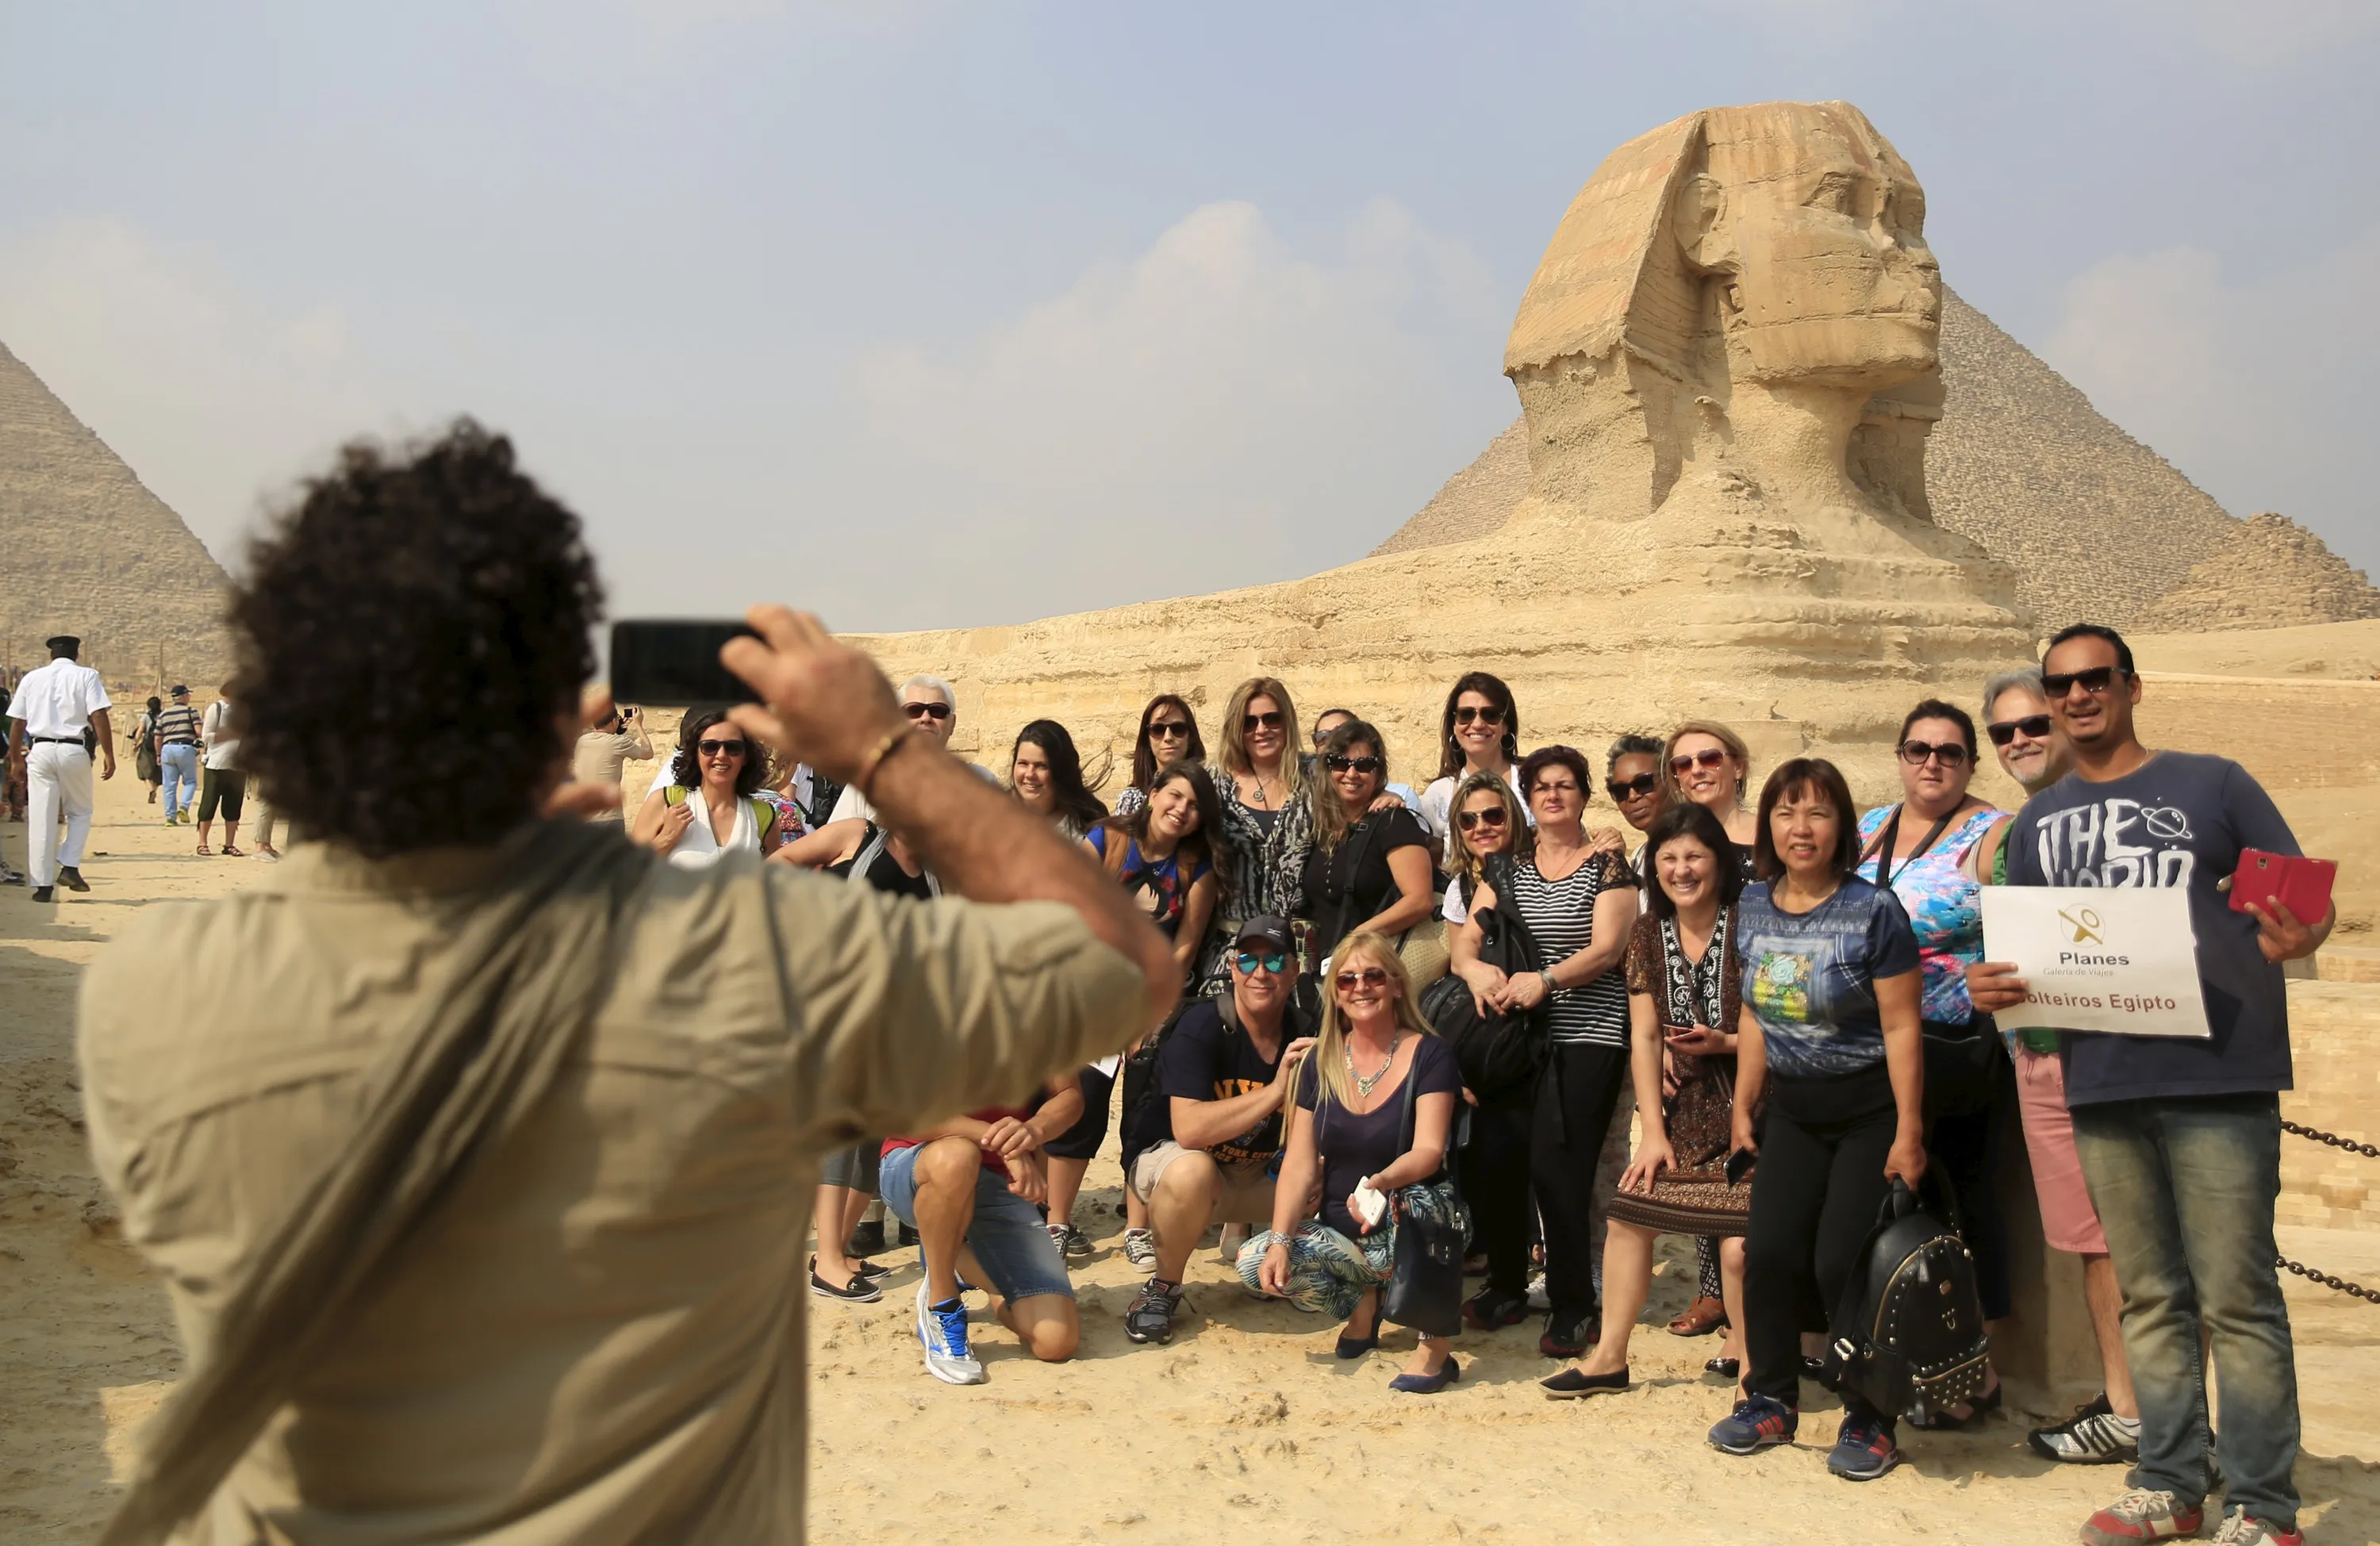 Новости египта для туристов на сегодня. Туристы в Египте. Экскурсия на пирамиды. Путешественники в Египте. Египет туризм.